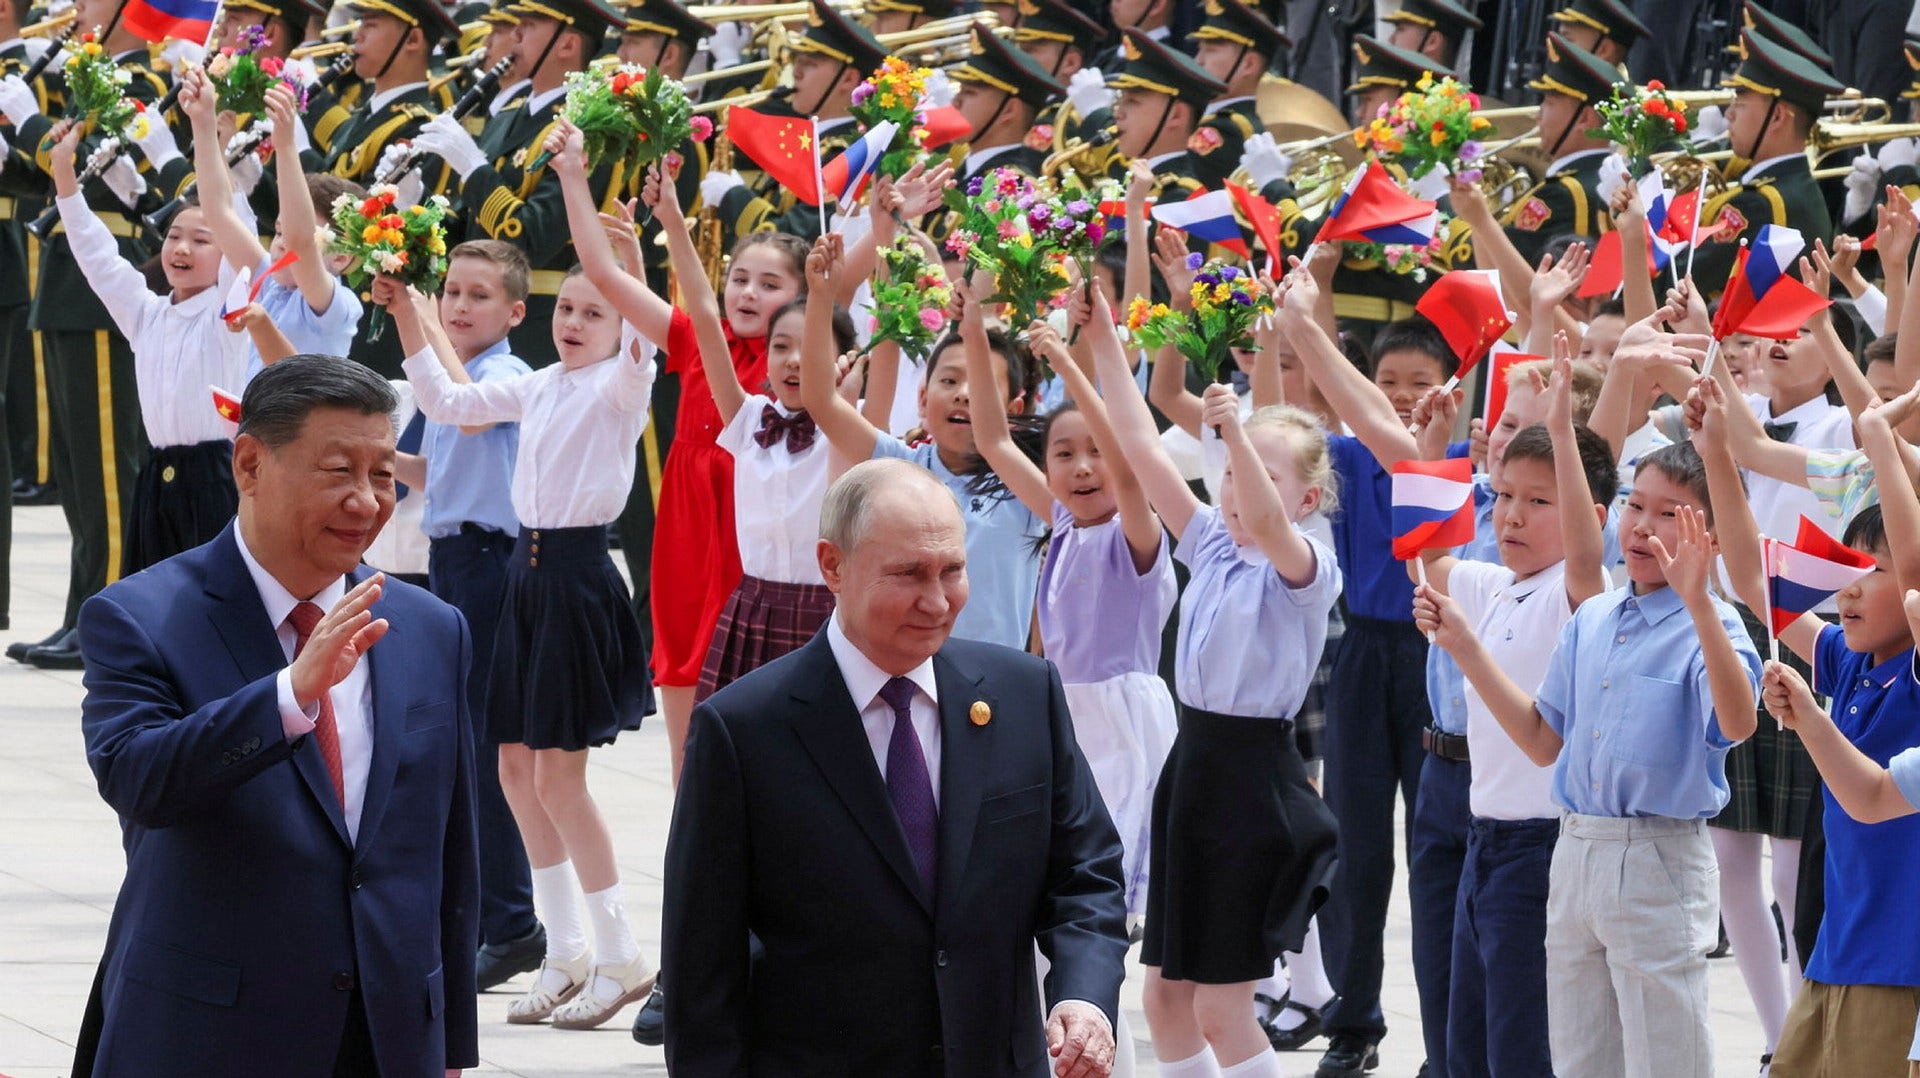 Bambini russi e cinesi esultano in piazza Tiananmen a Pechino mentre passano il leader cinese Xi Jinping e il presidente russo Vladimir Putin.  Putin è in visita di due giorni in Cina.